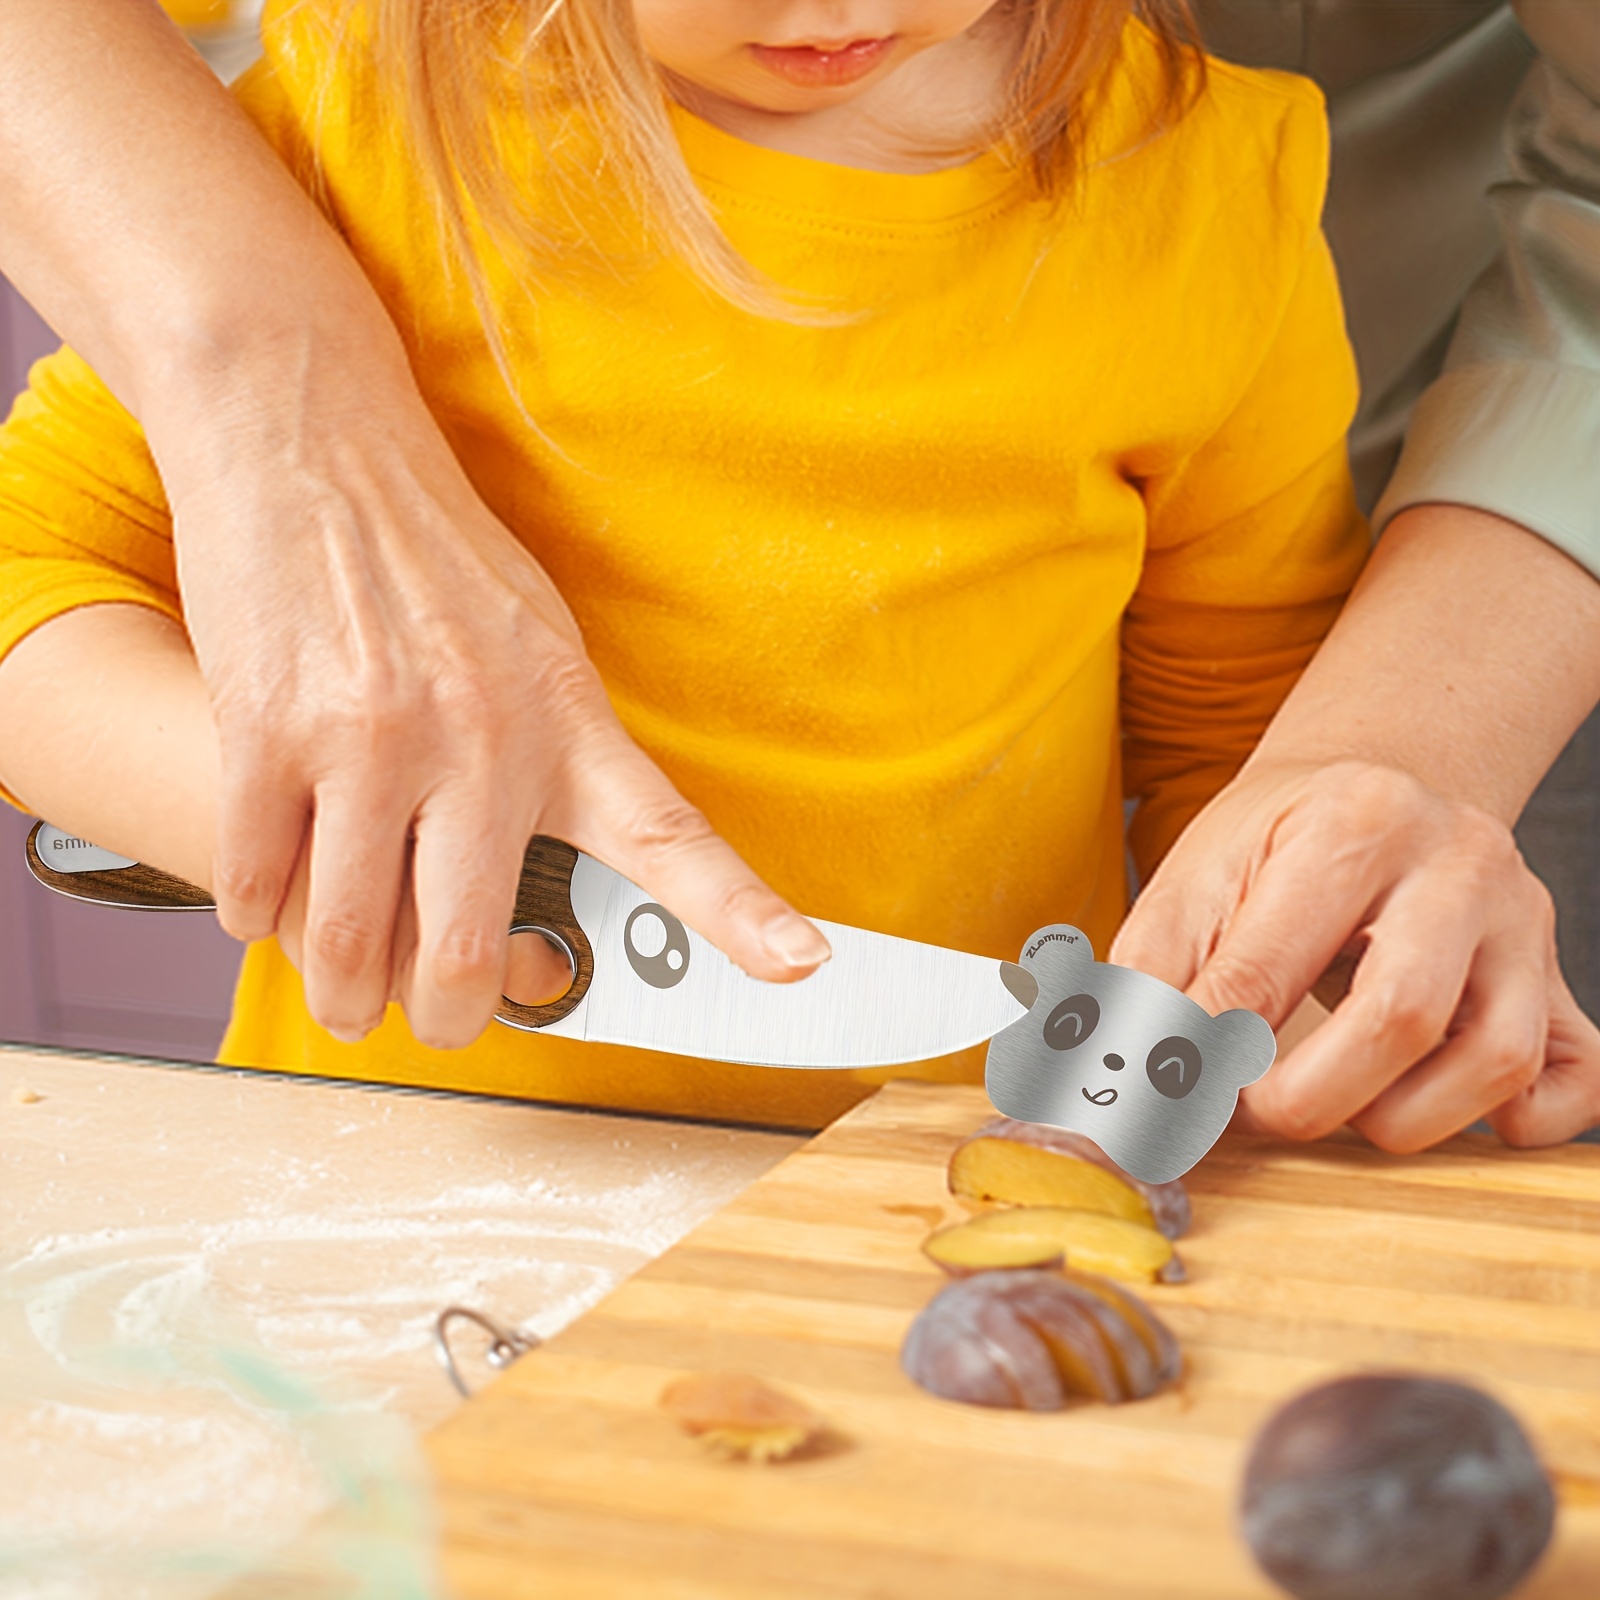 Educación Montessori - NIÑOS MONTESSORI: USANDO EL CUCHILLO CUCHILLOS COMO  OBJETOS PELIGROSOS Los cuchillos siempre han formado parte de nuestra  sociedad como objetos peligrosos y a mantener fuera del alcance de los